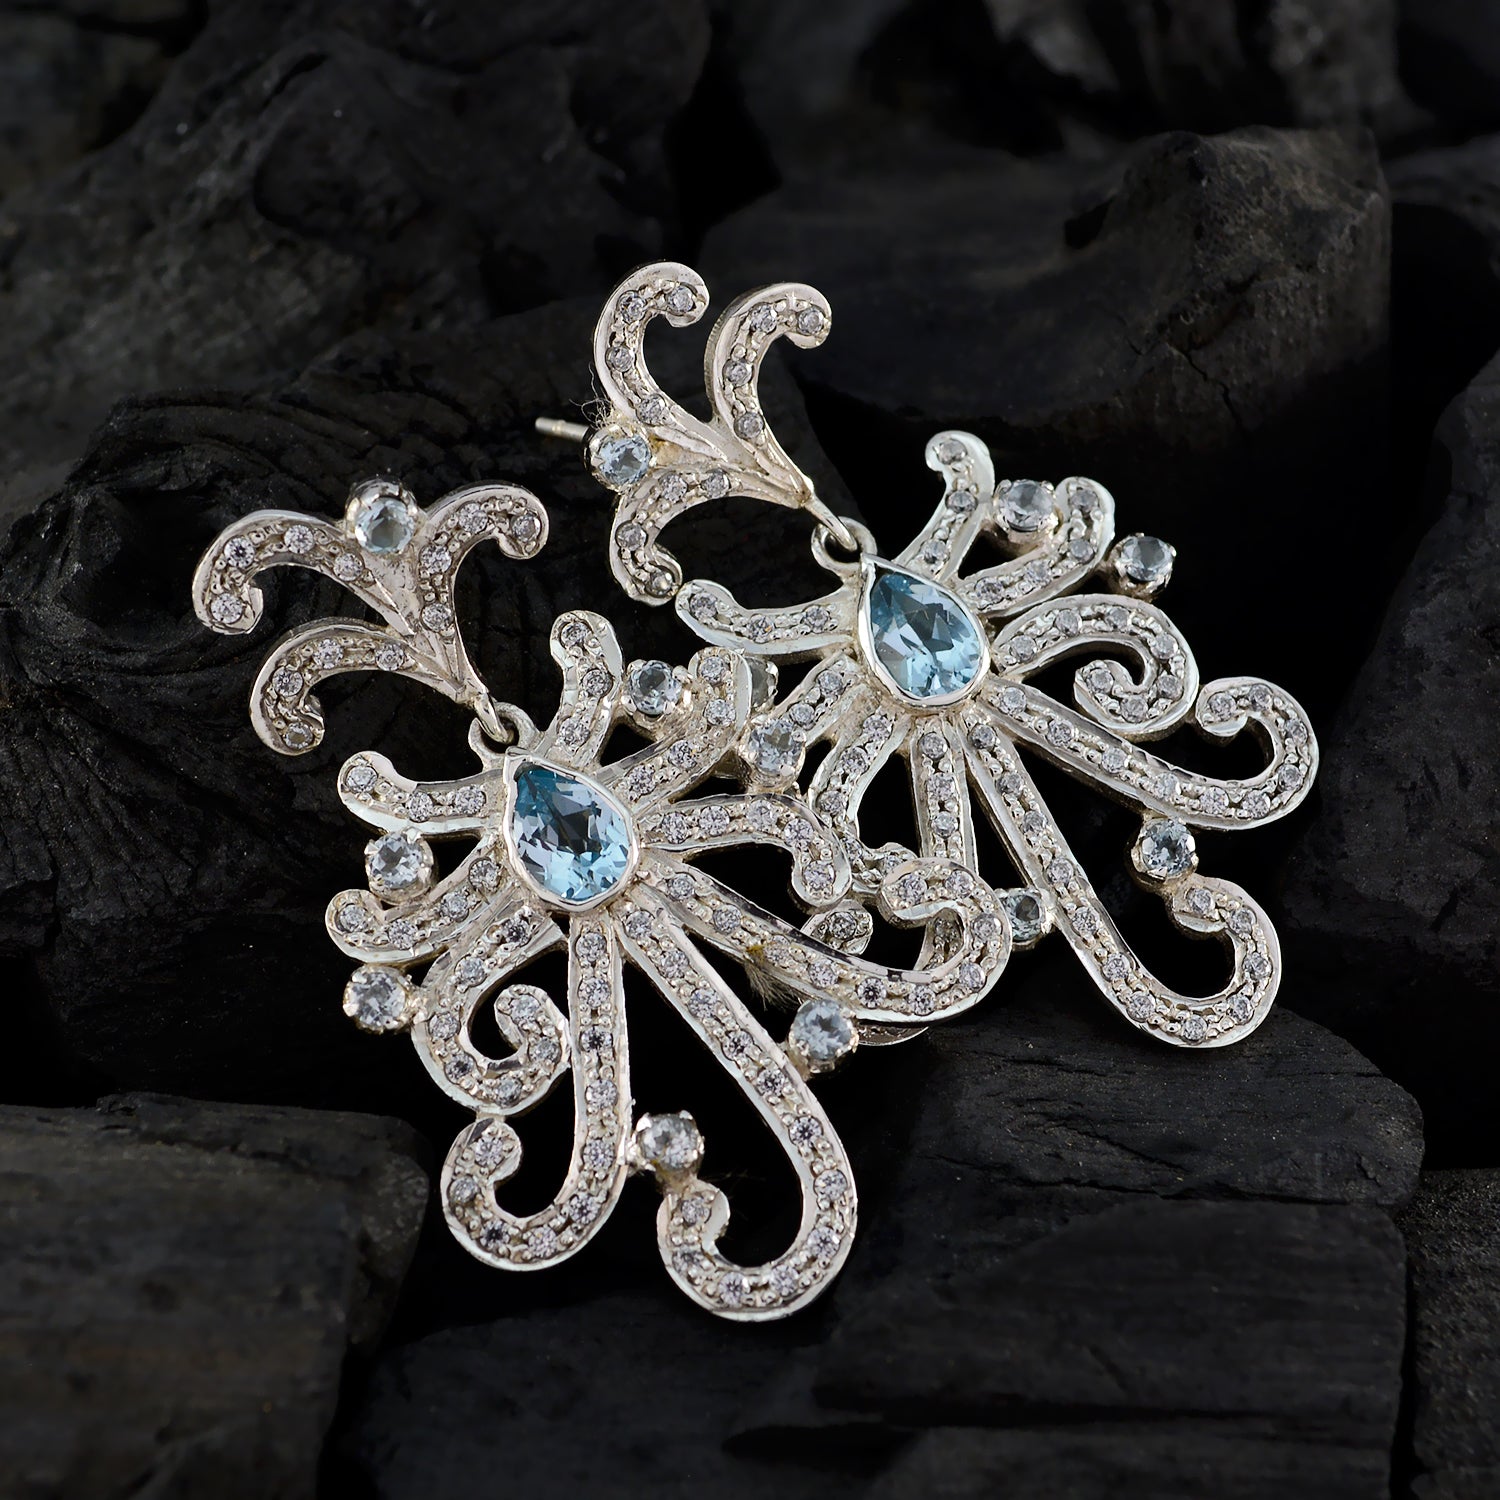 Riyo Genuine Gems multi shape Faceted Blue Topaz Silver Earrings gift for easter Sunday